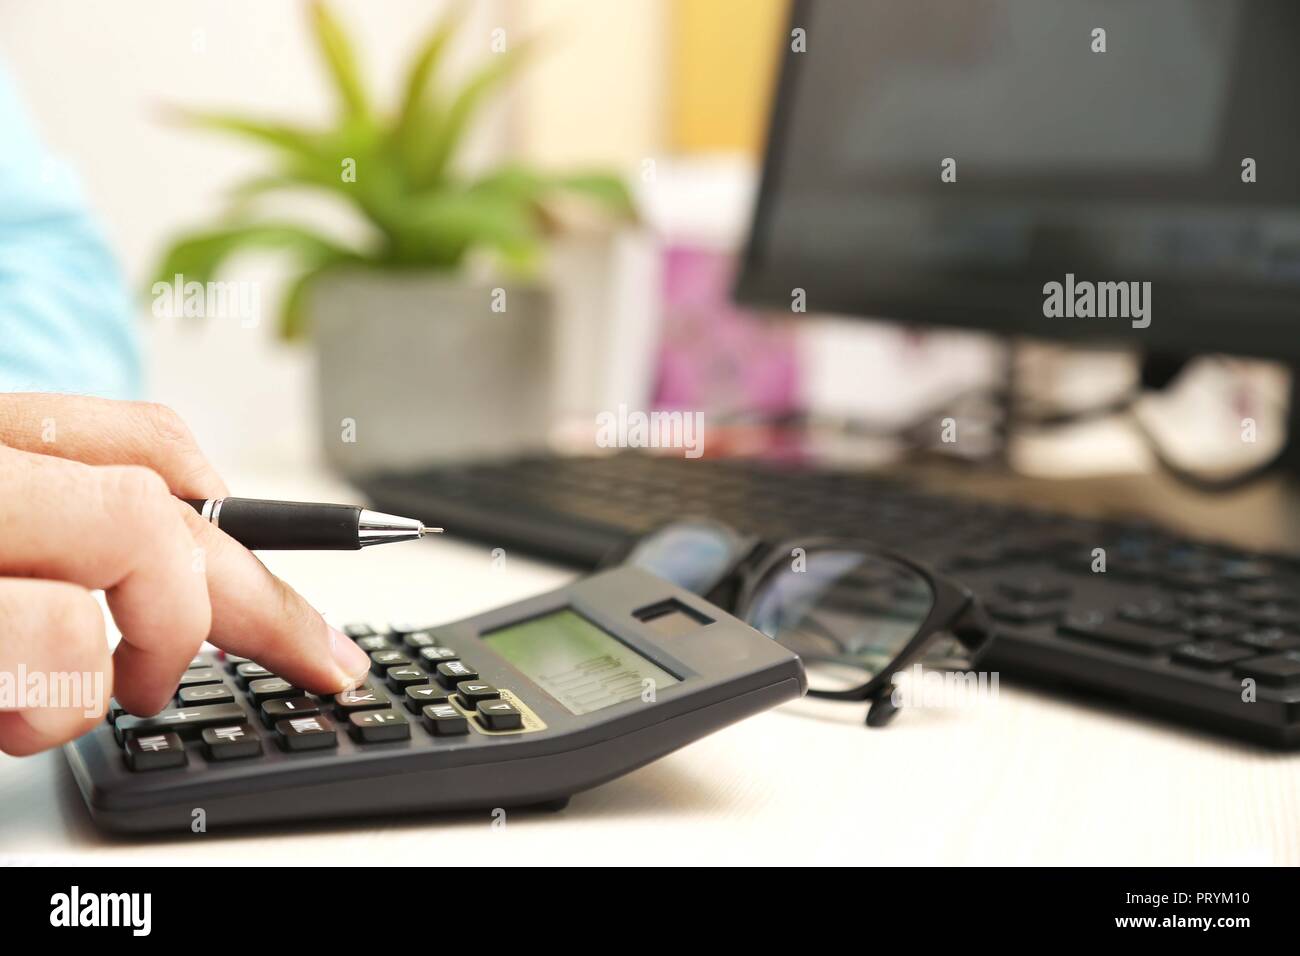 L'homme est l'utilisation de calculatrice avec stylo à la main. Photo de l'ordinateur, clavier, pot de fleurs et des verres sur la table. Banque D'Images